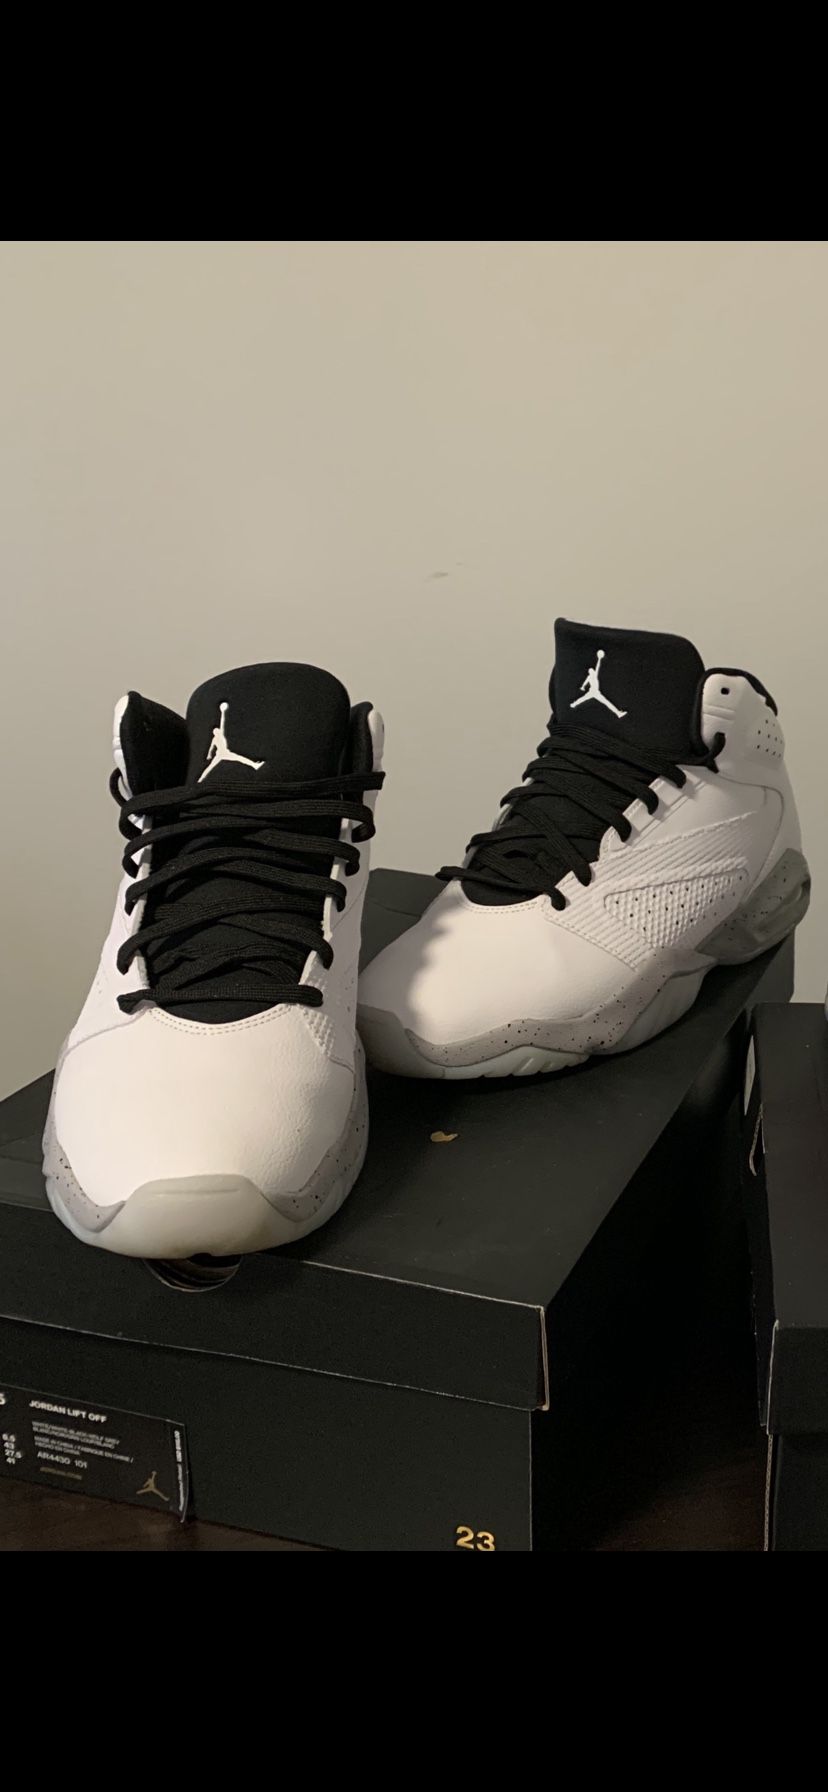 Jordan sneakers 9 1/2